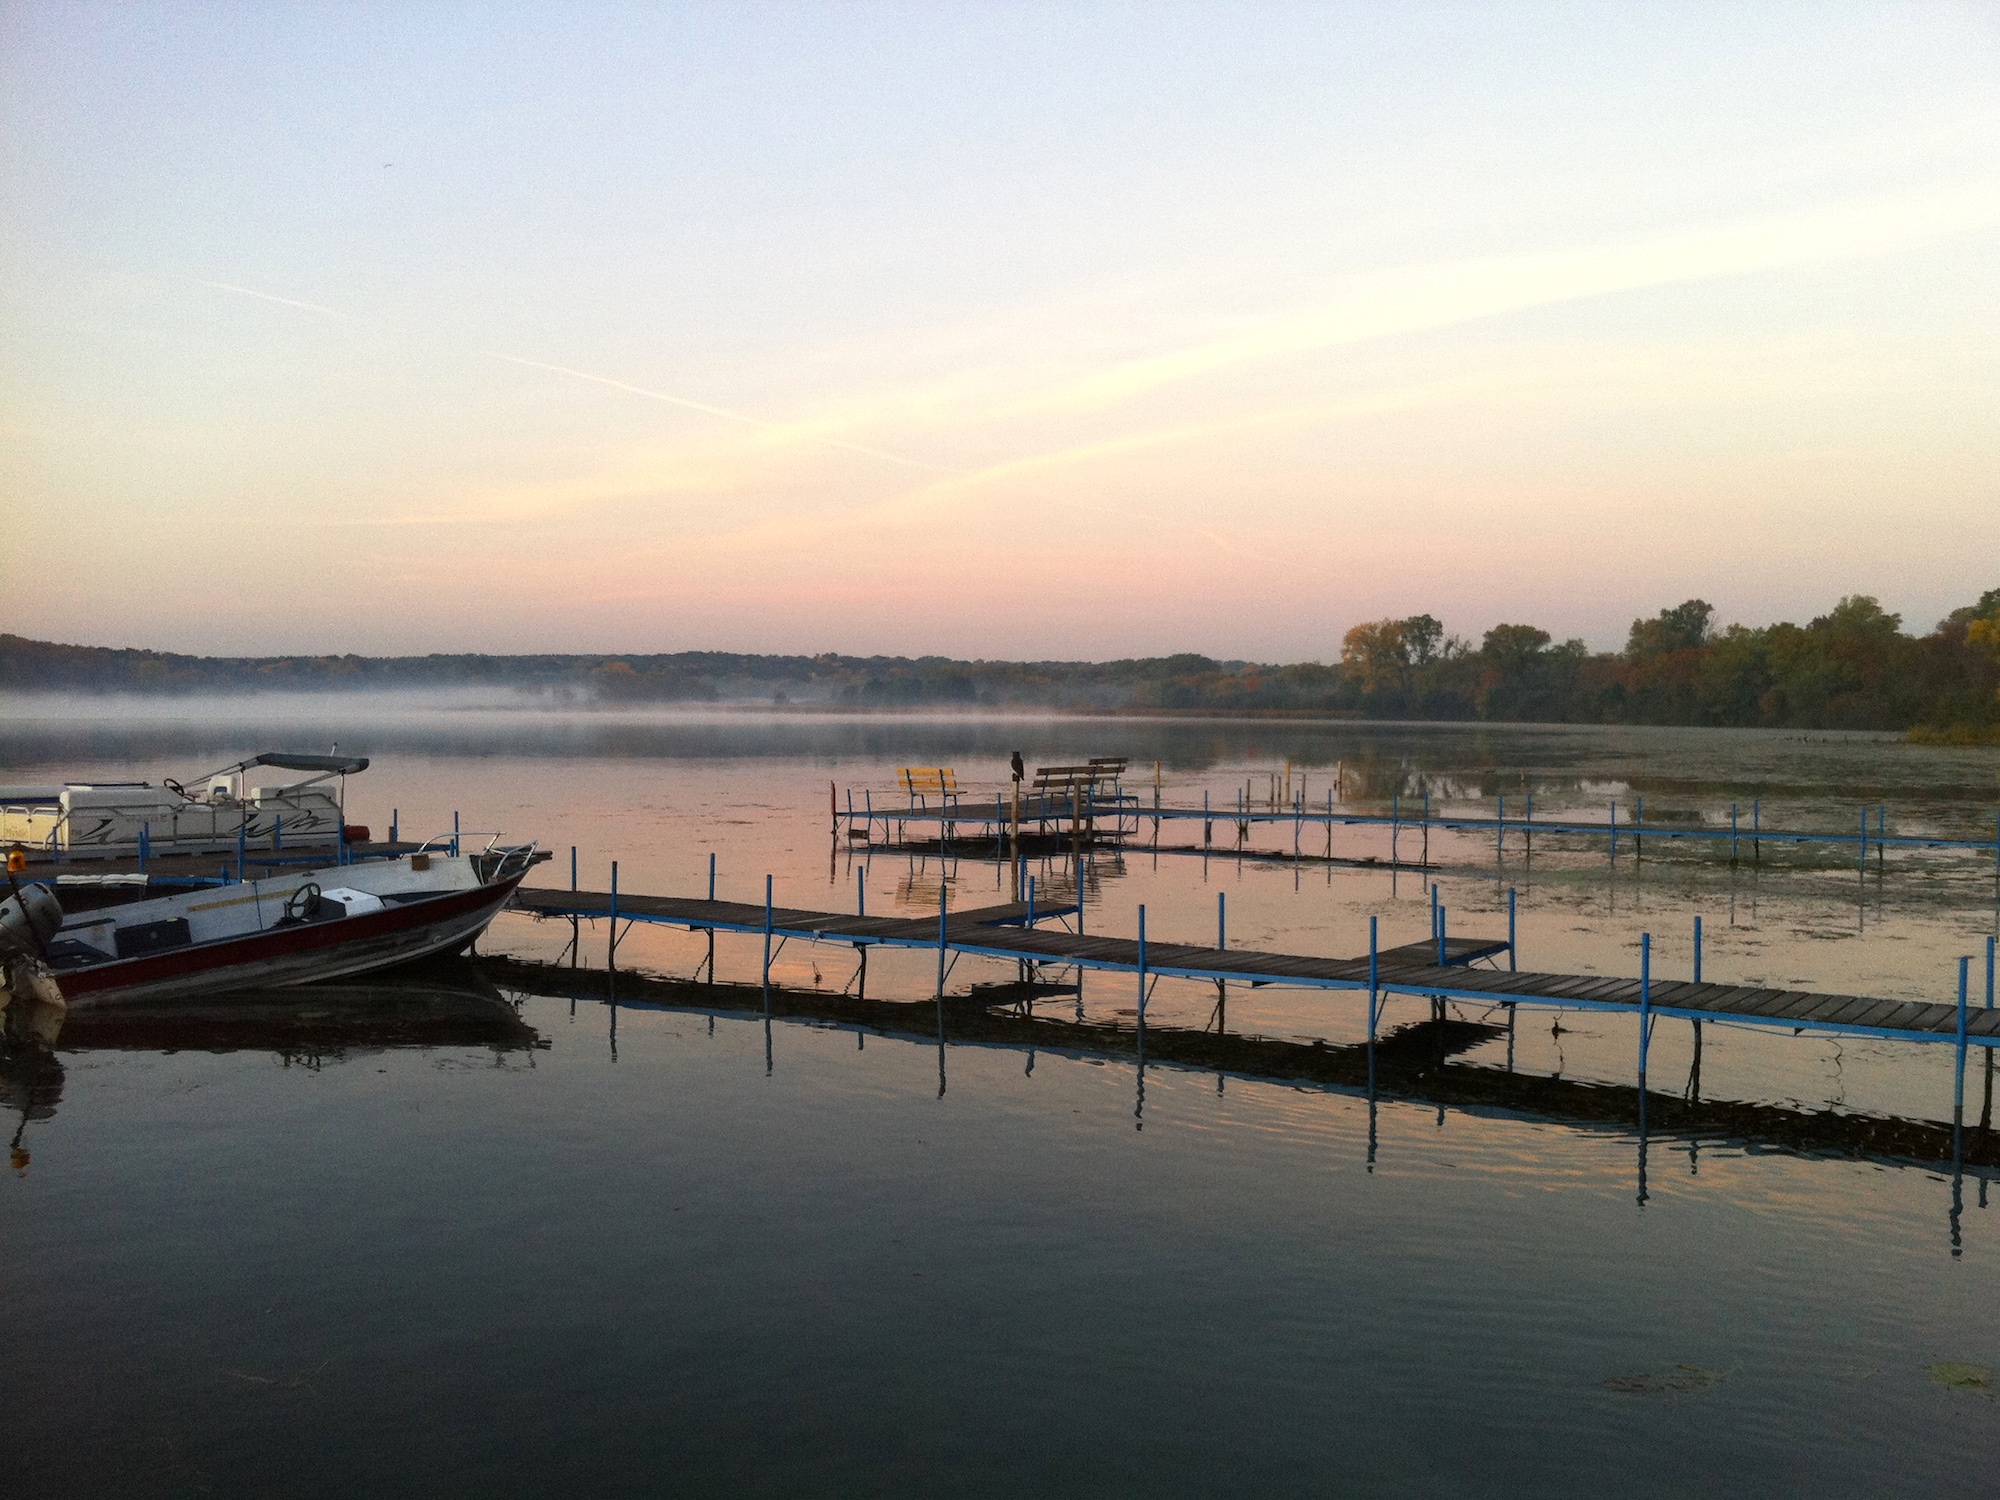 Lake Wingra on October 7, 2011 at sunrise.